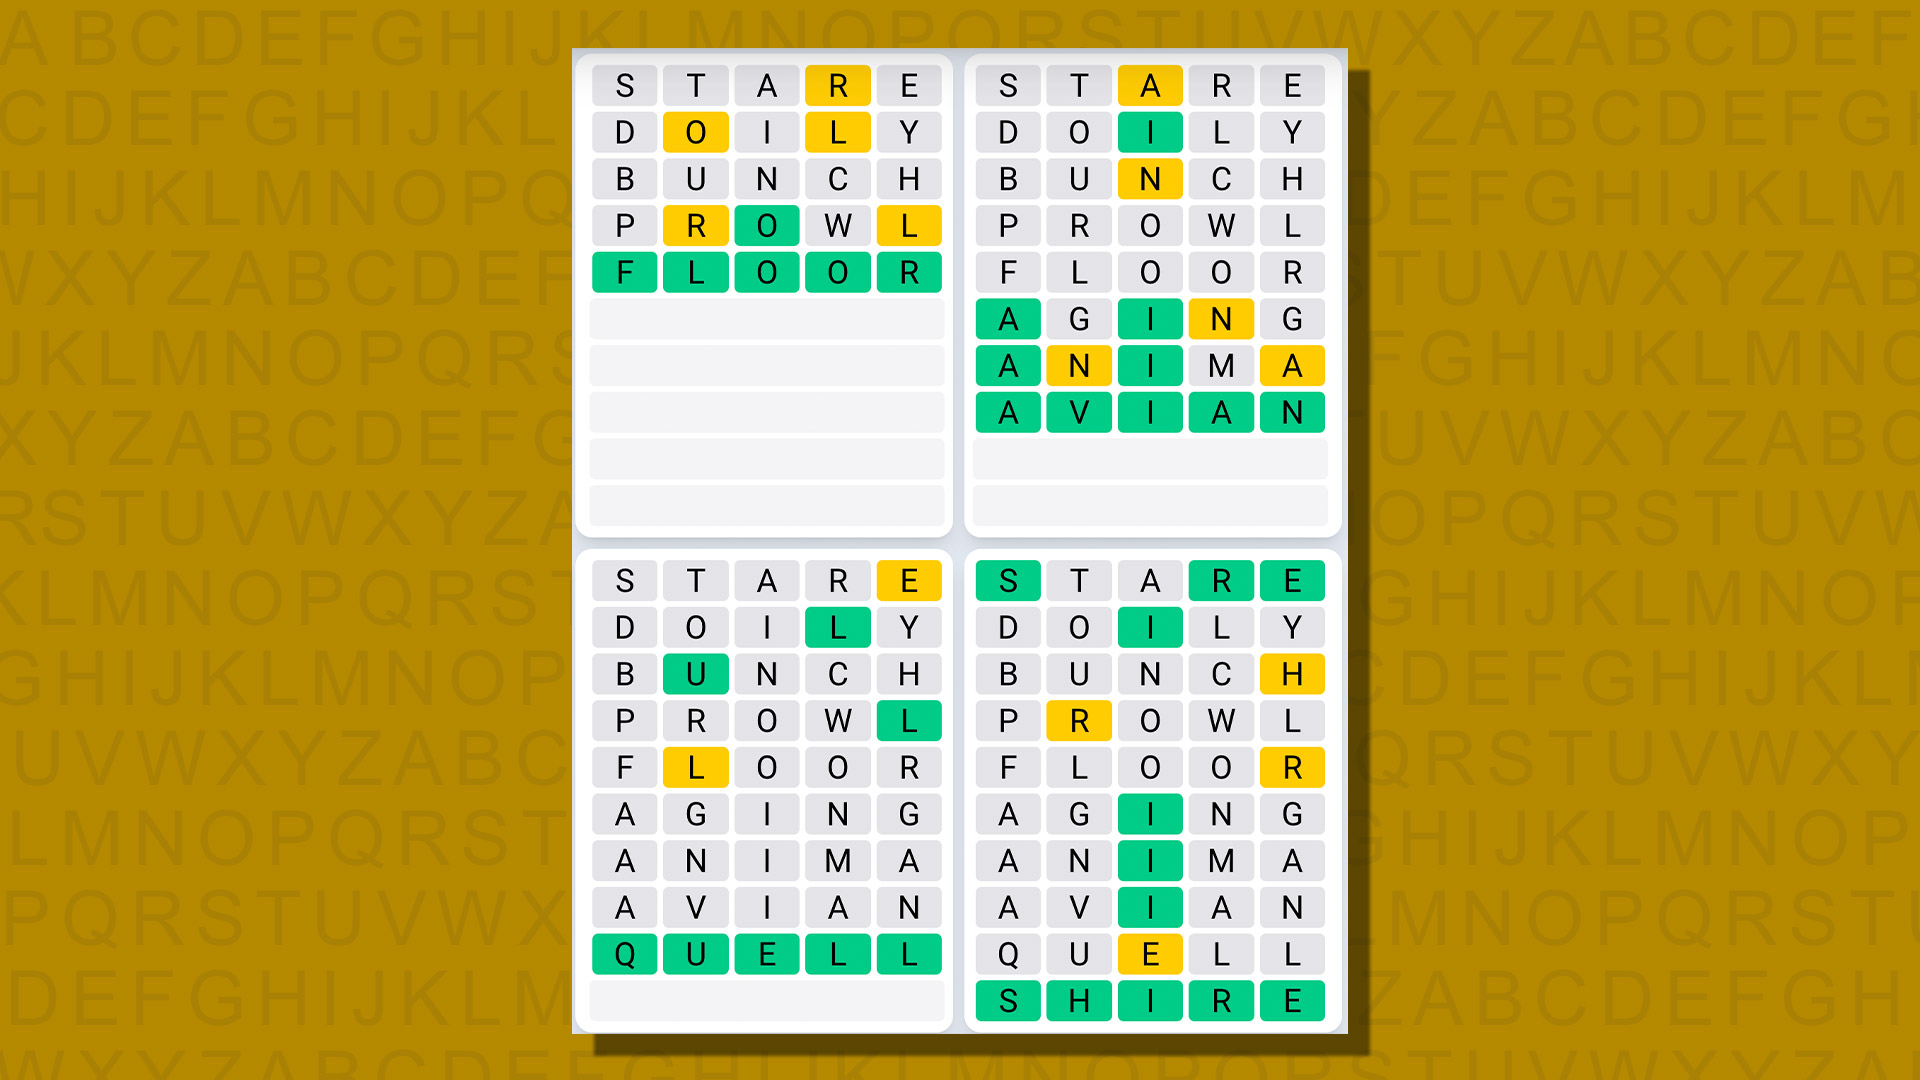 Ежедневная последовательность ответов Quordle для игры 750 на желтом фоне